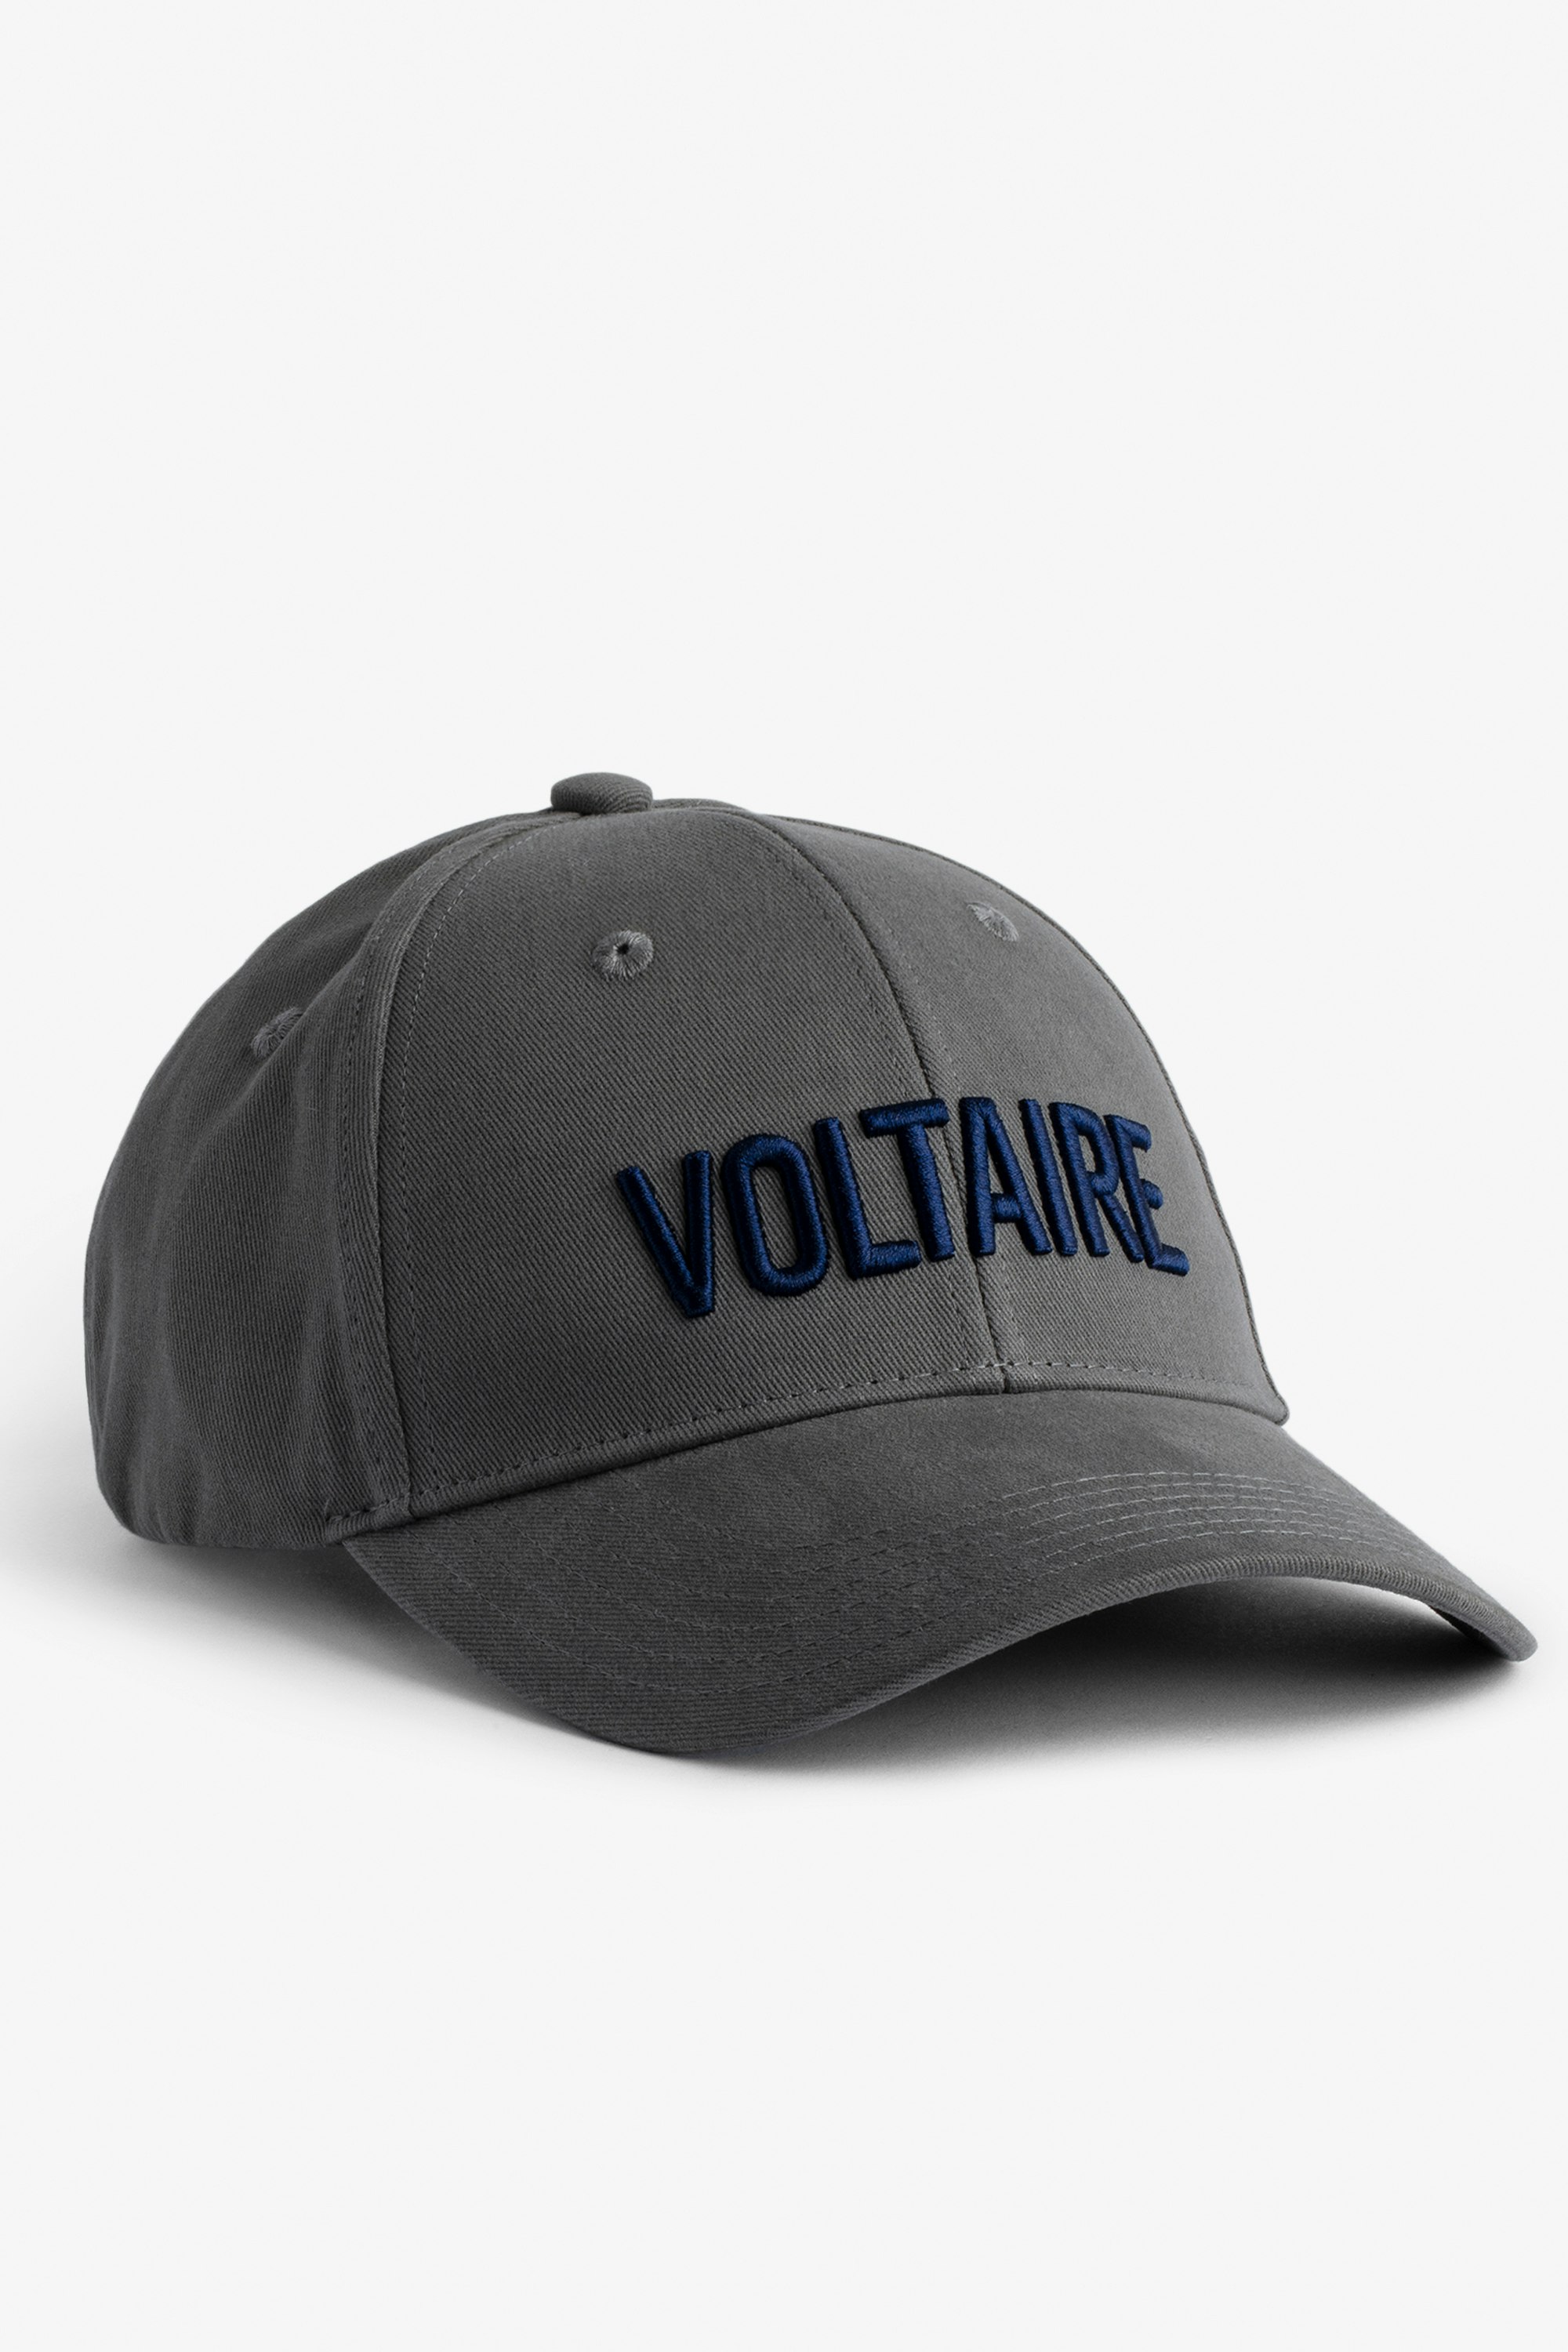 Schirmmütze Klelia Voltaire - Mit „Voltaire“ bestickte Herren-Schirmmütze aus grauer Baumwolle.